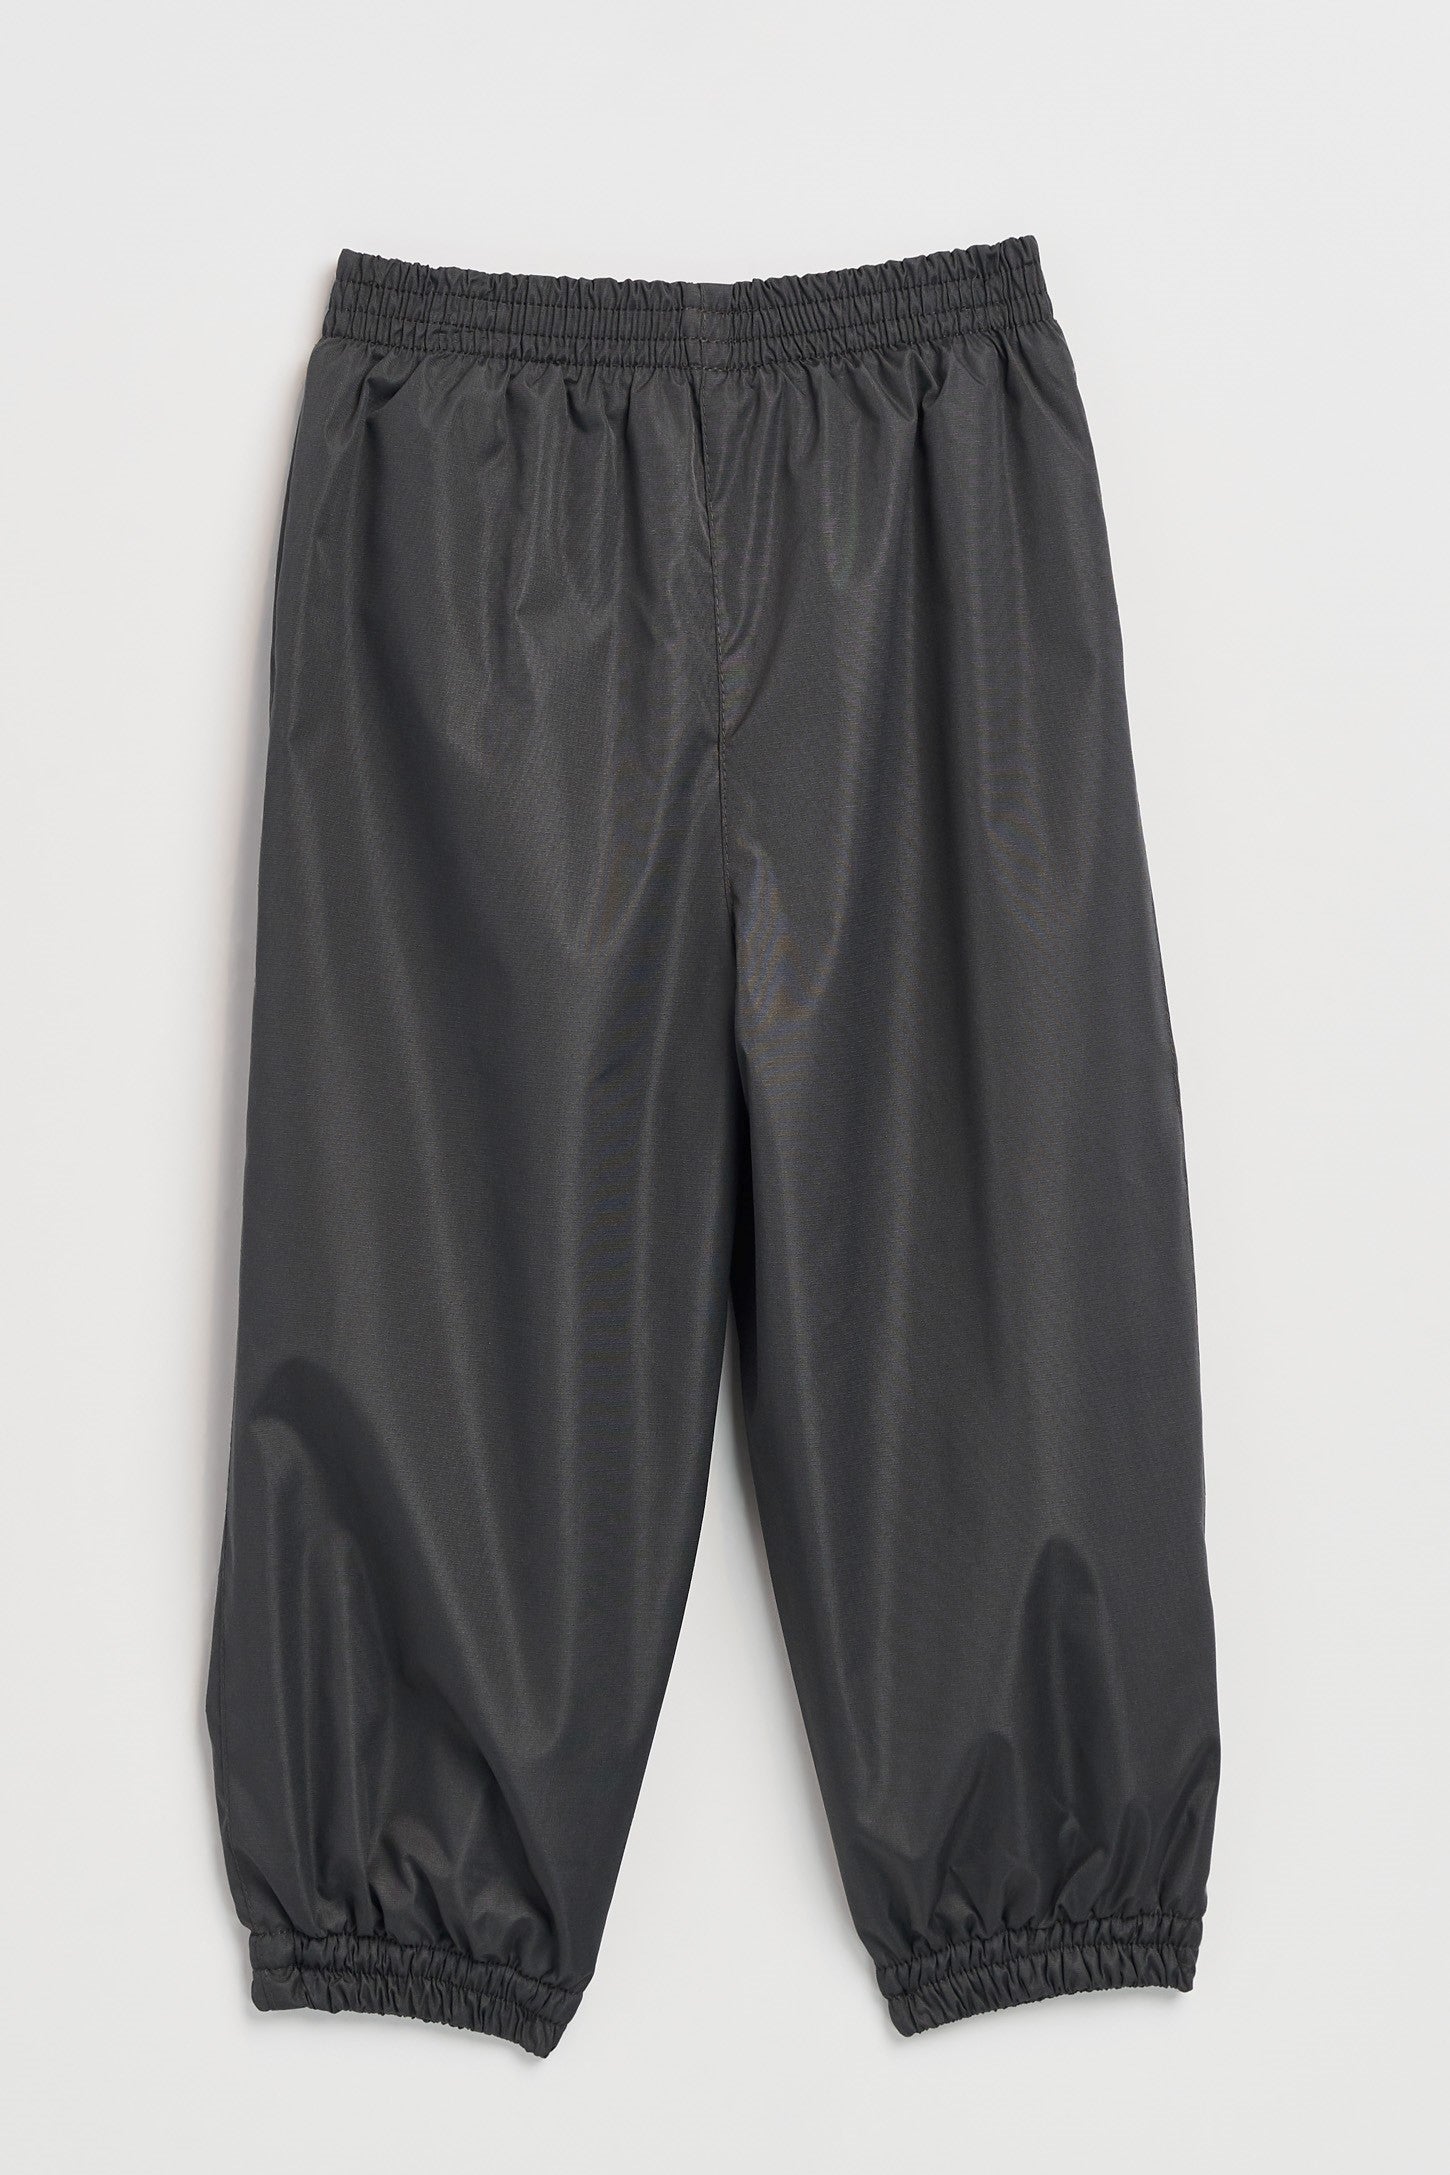 Pantalon d'extérieur doublé en polar, 2T à 3T - Bébé && GRIS FONCE